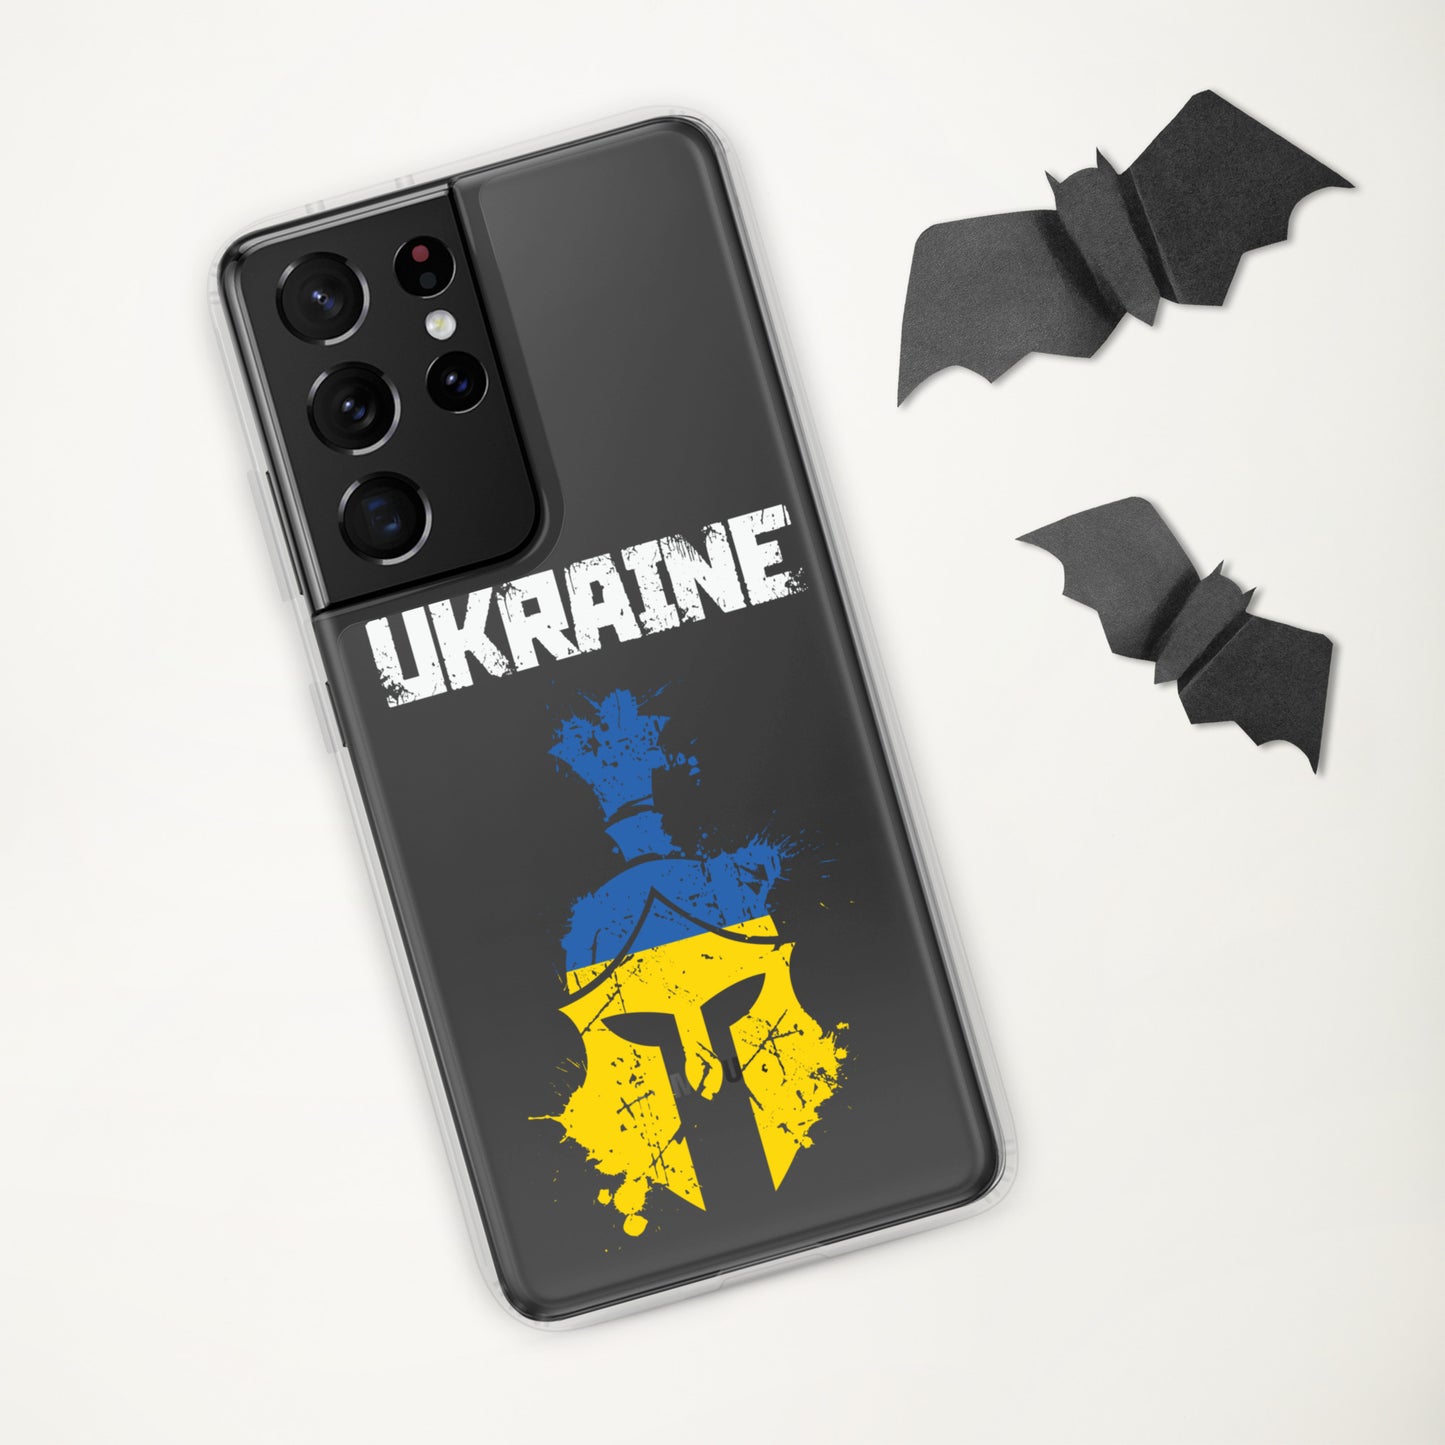 Ukrainian Warrior Support Ukraine | Samsung Case